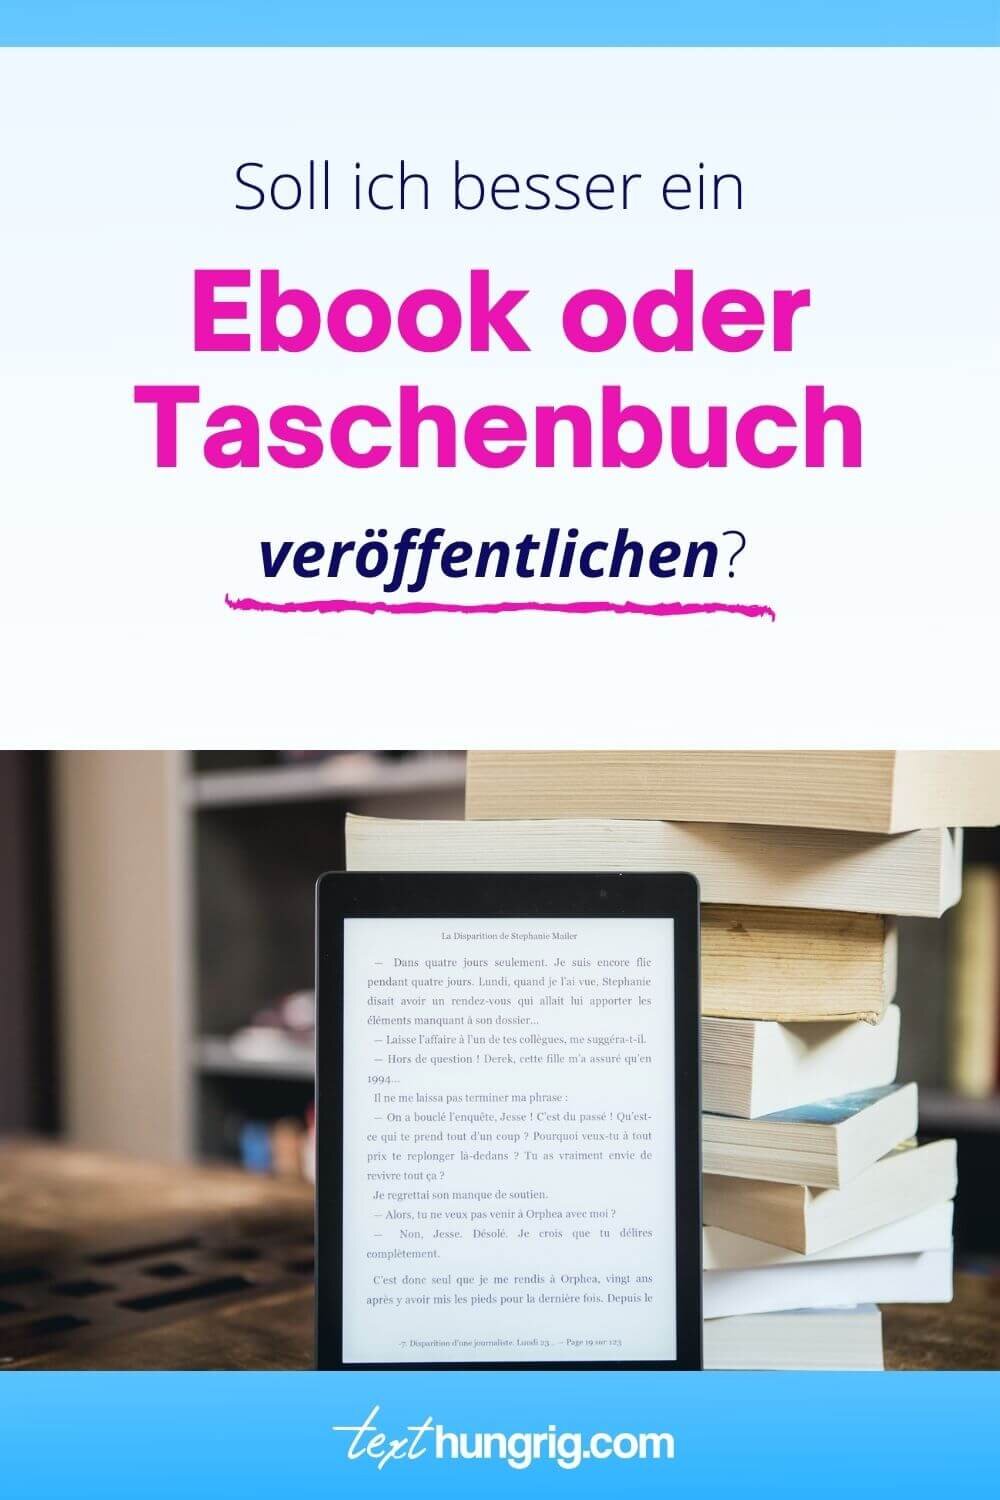 Buchmarketing Blog Fur Selbstverleger Und Verlagsautoren Soll Ich Besser Ein Ebook Oder Ein Taschenbuch Veroffentlichen